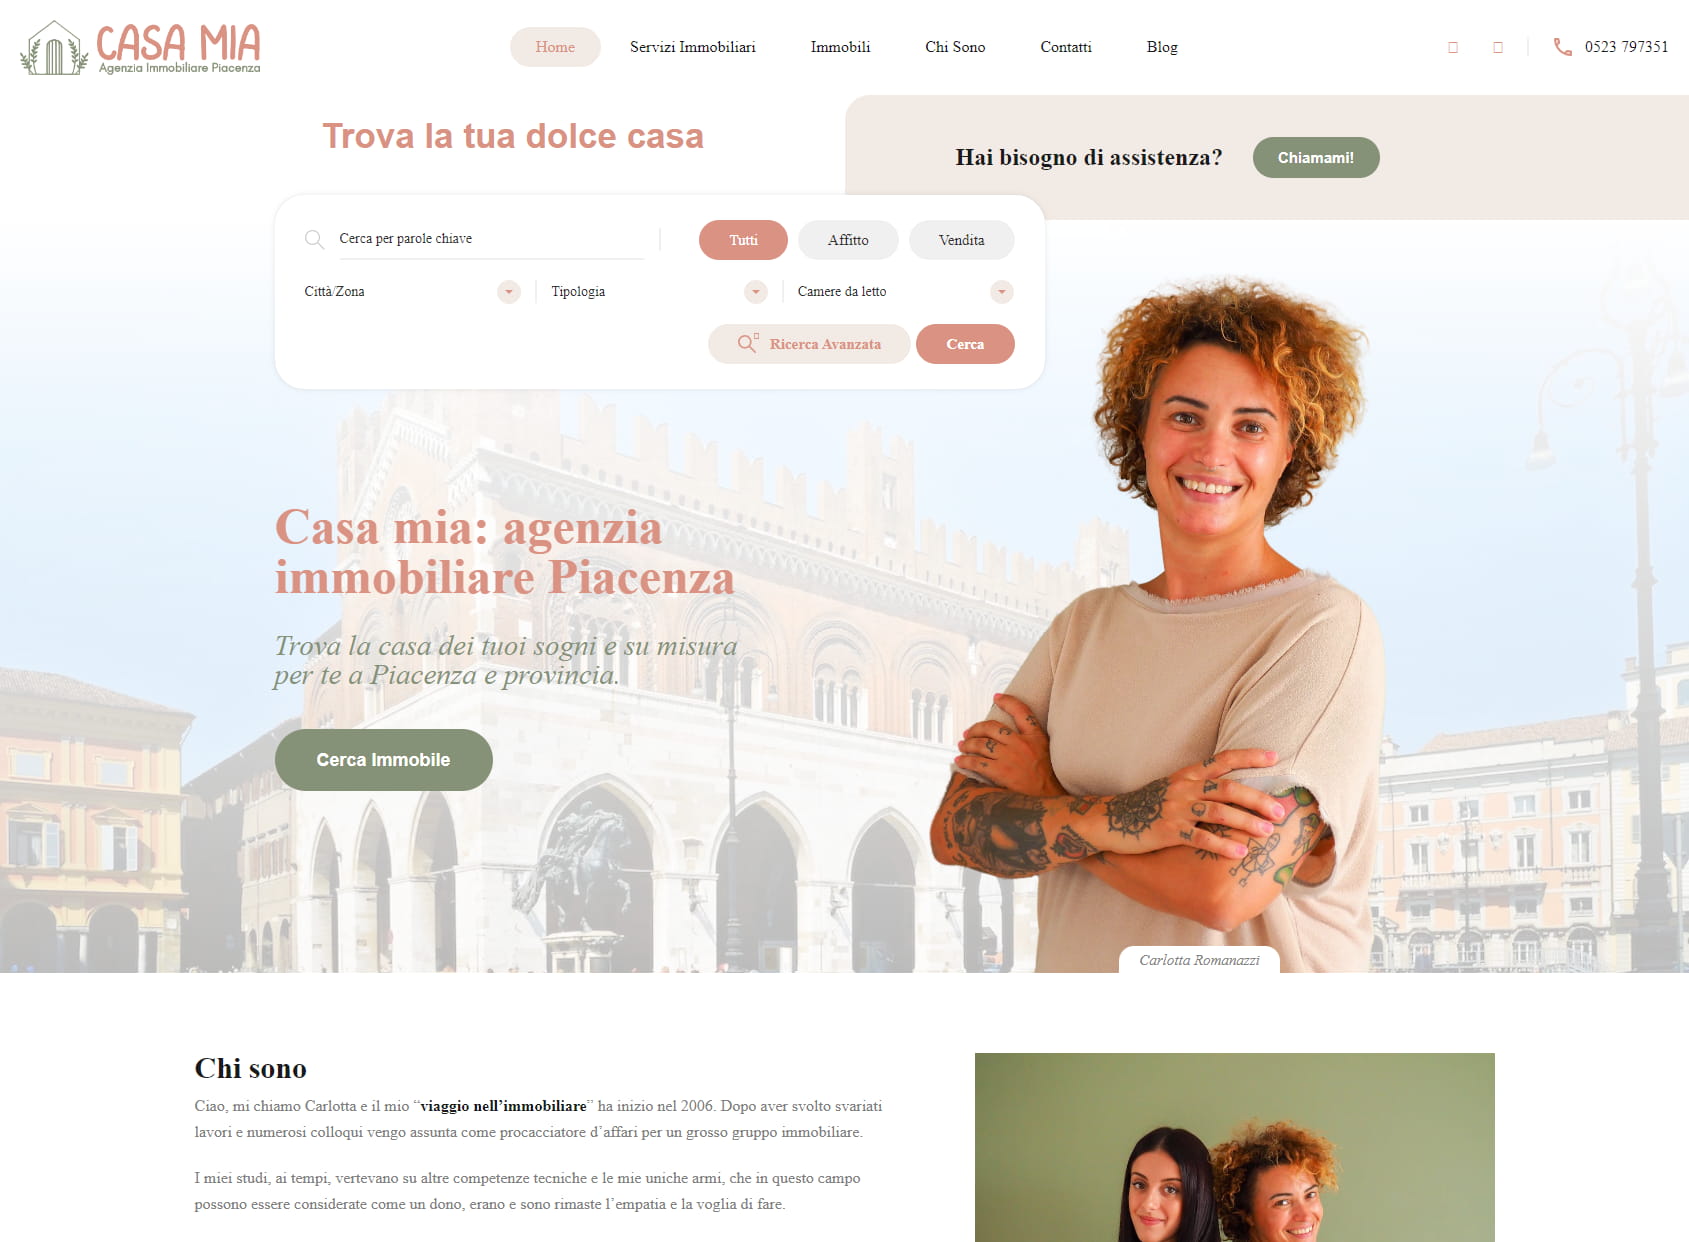 Casa mia - Agenzia immobiliare Piacenza di Romanazzi Carlotta